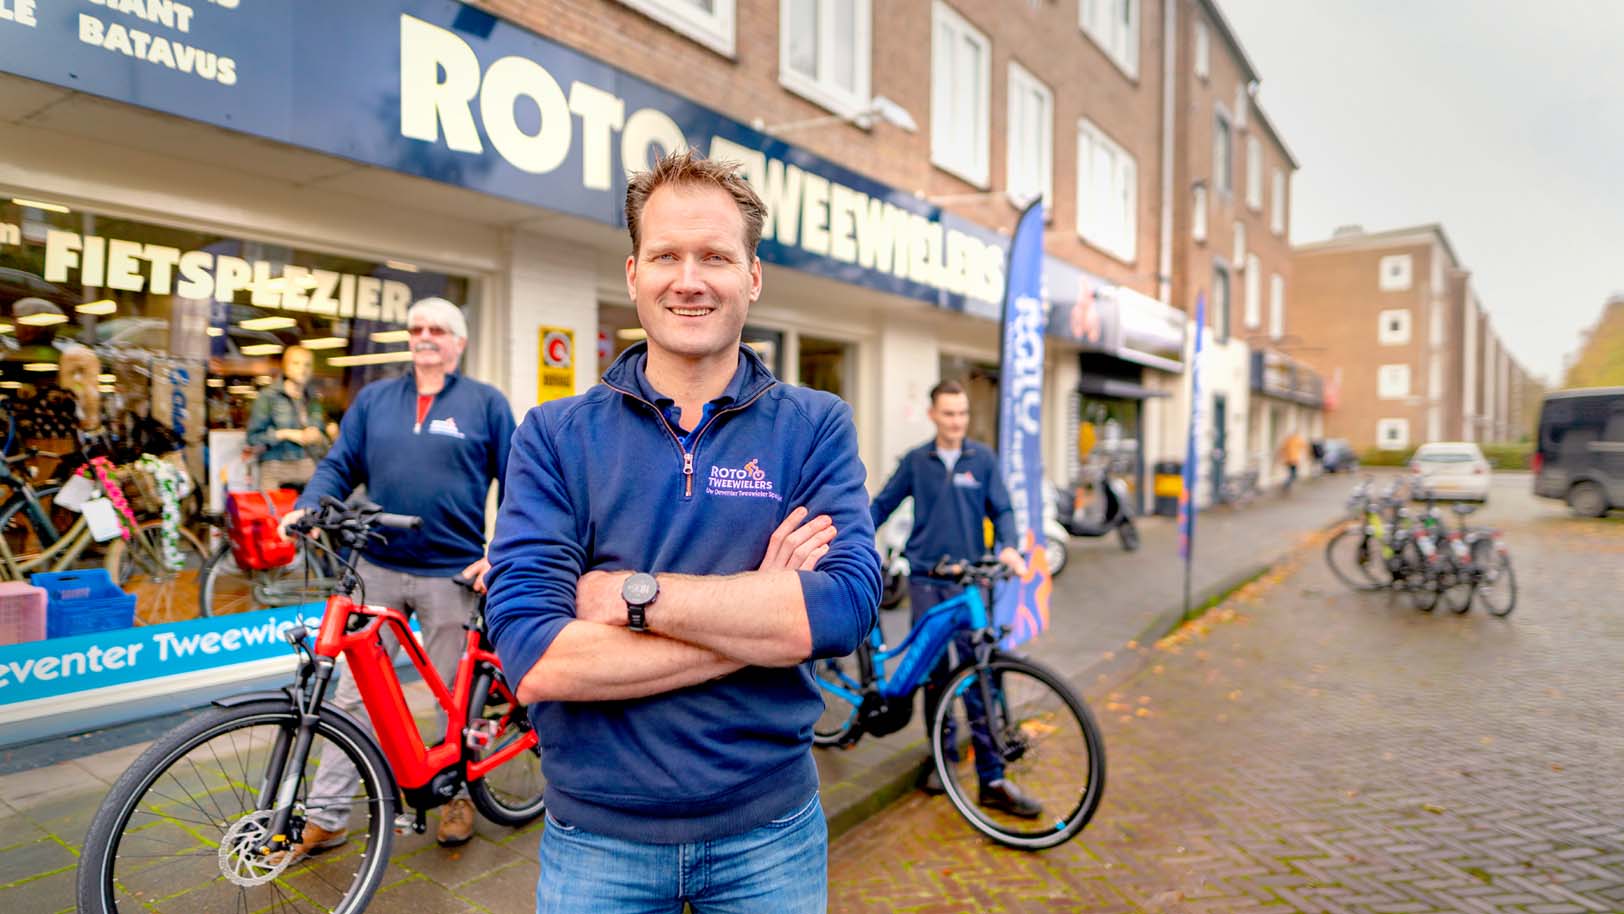 Een echte automan, die nu een fietswinkel runt. Wilco Wolterink van Roto Tweewielers in Deventer had het zelf niet direct bedacht. Maar spijt heeft hij er niet van. Ook op twee wielen draait het om mobiliteit en vooral: ondernemerschap.